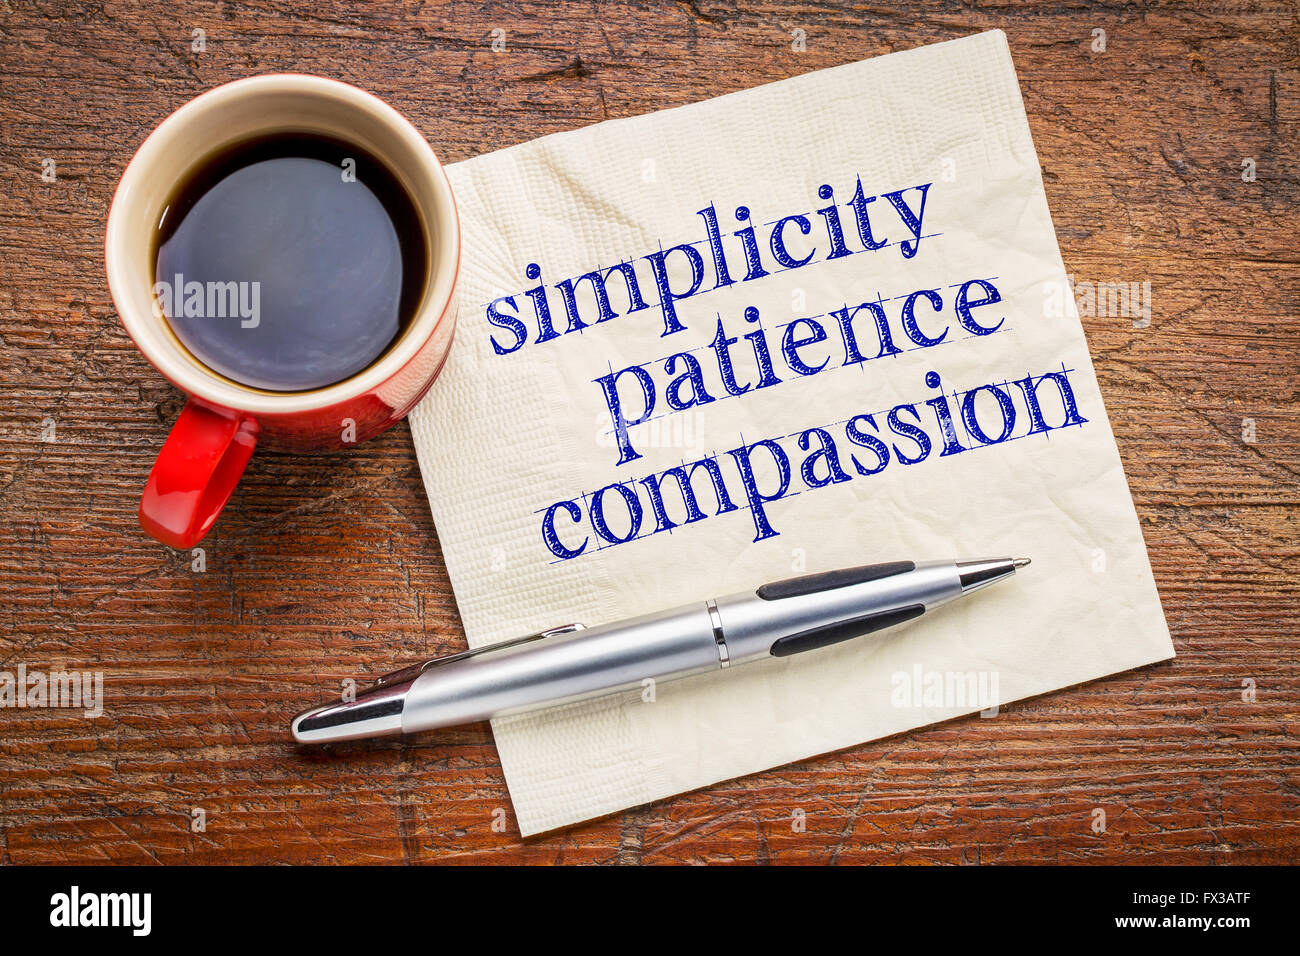 Semplicità, la pazienza e la compassione - tre parole di insegnamento di Buddha - scrittura su un tovagliolo con tazza di caffè contro grigio sl Foto Stock